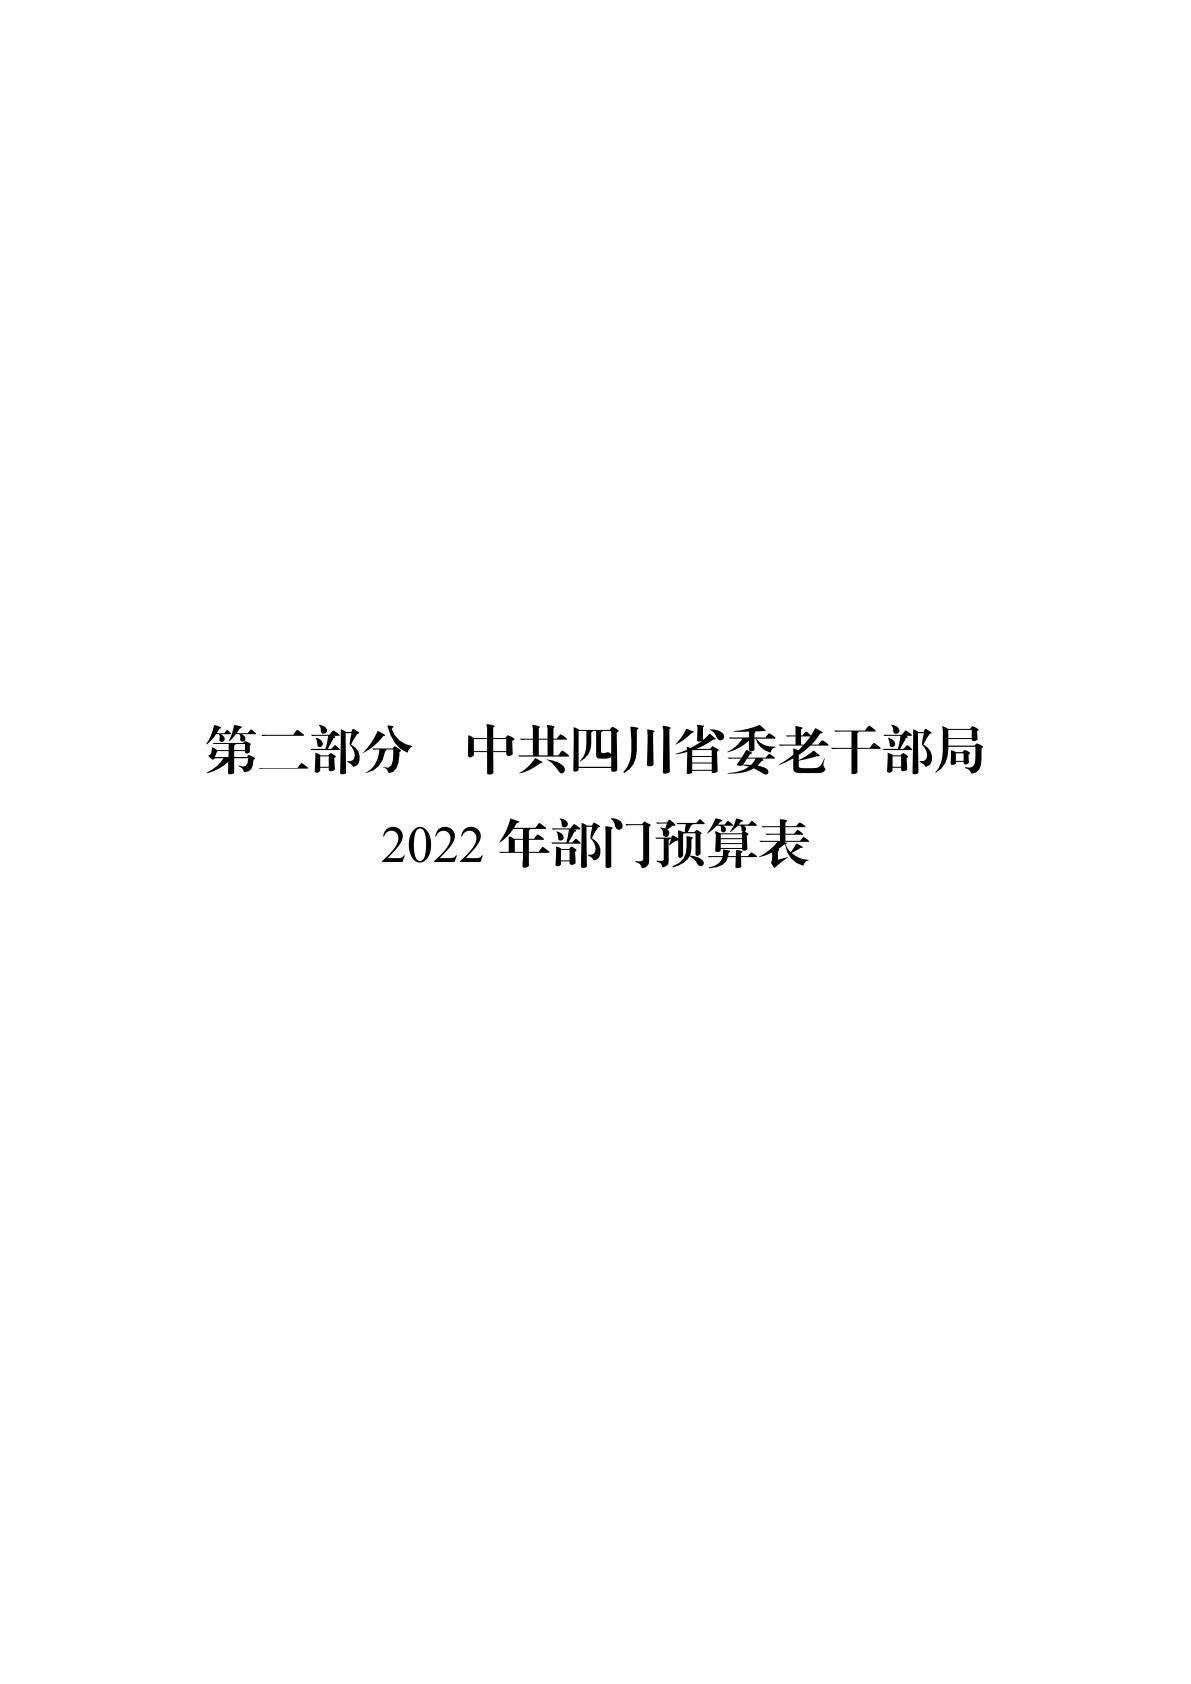 2022老干部局预算公开（20220315）_6.jpg